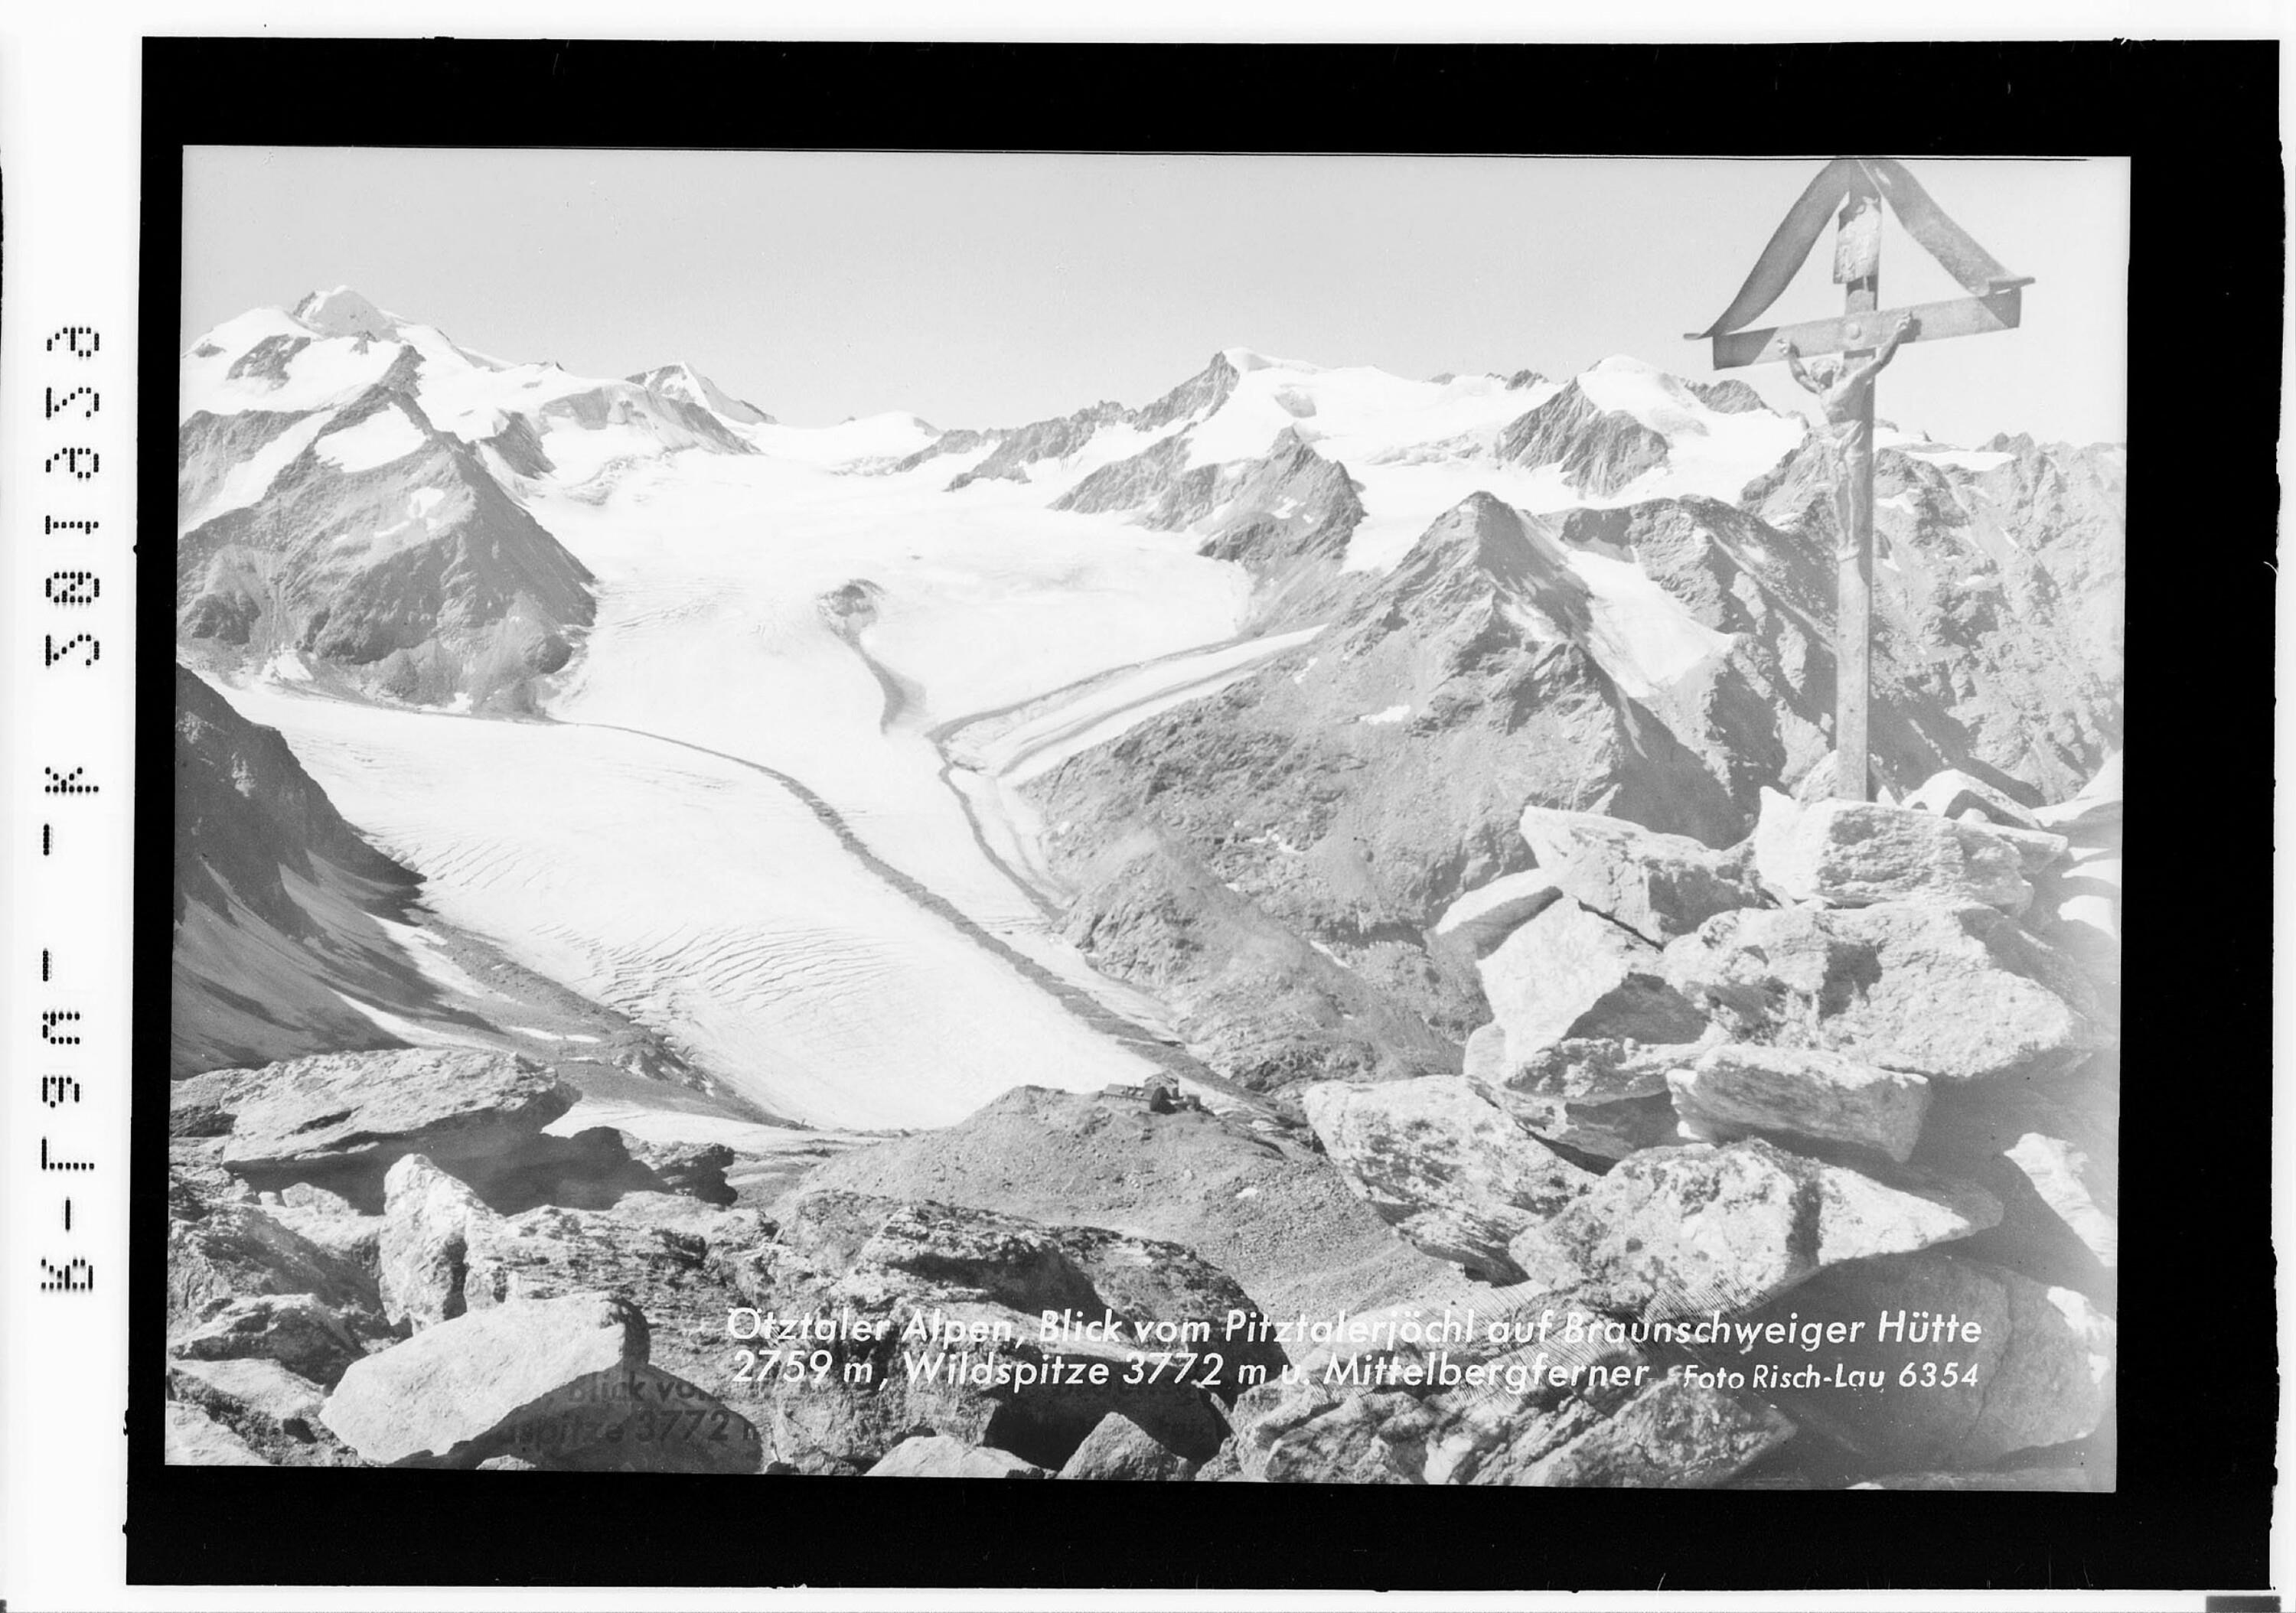 Ötztaler Alpen / Blick vom Pitztalerjöchl auf Braunschweiger Hütte 2759 m, Wildspitze 3772 m und Mittelbergferner></div>


    <hr>
    <div class=